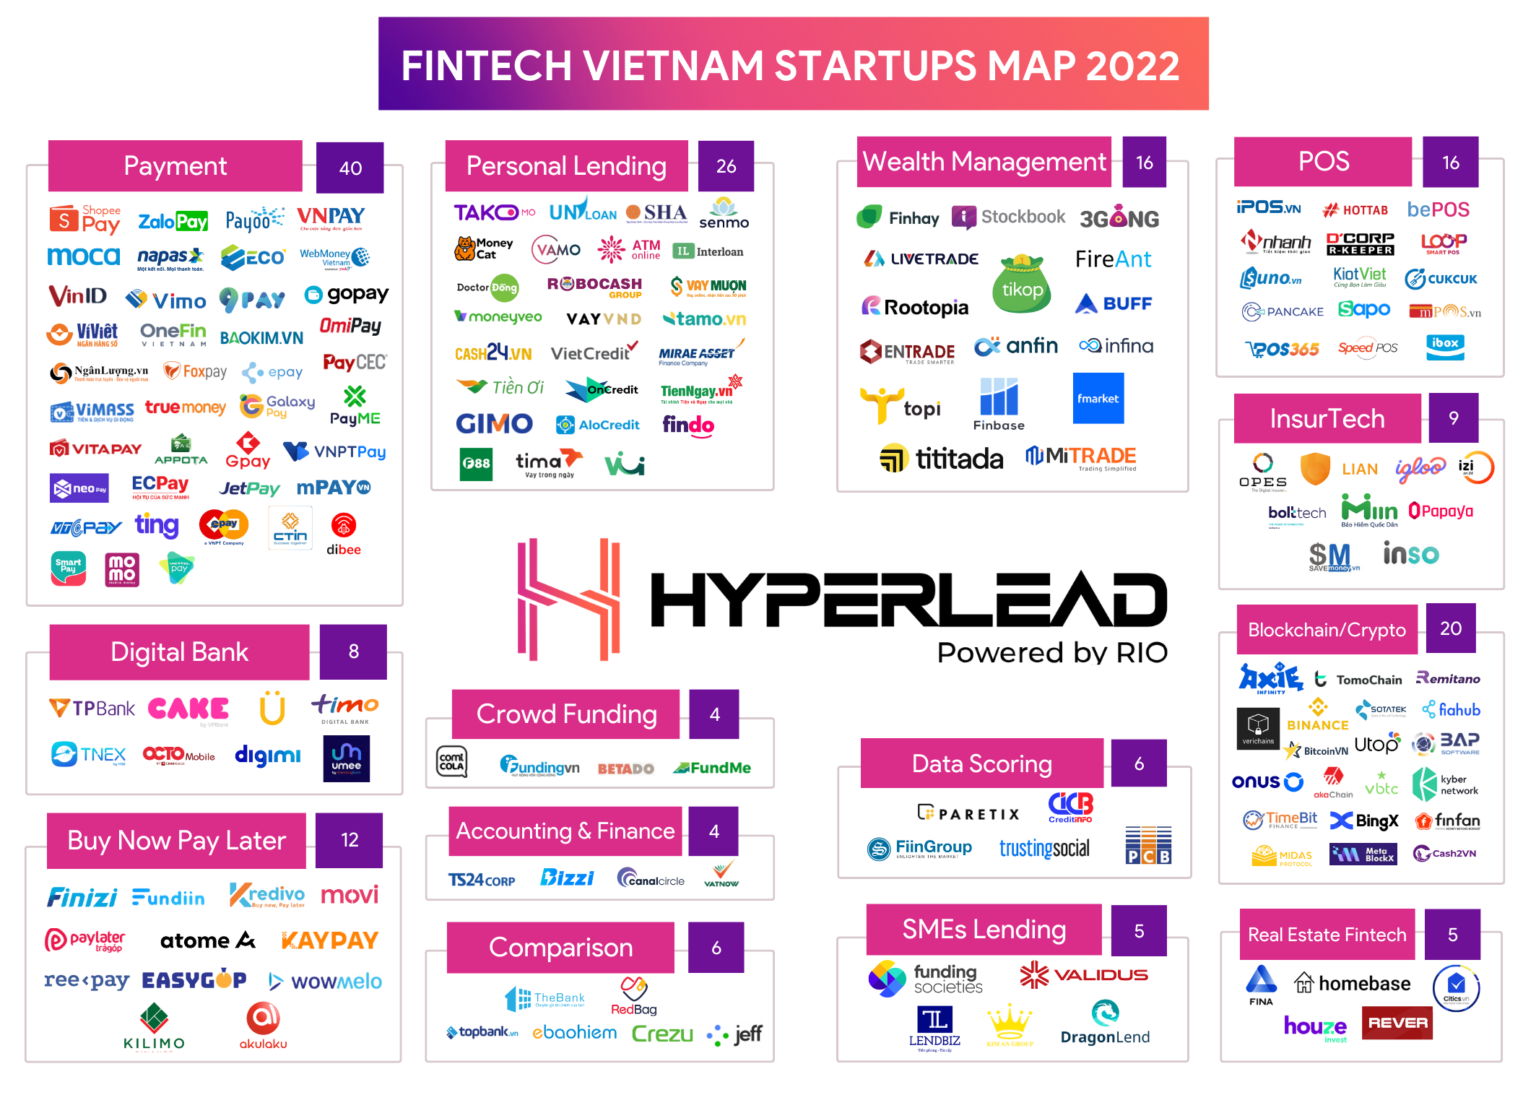 fintech-vietnam-2022-startups-map-1536x1095-1.png